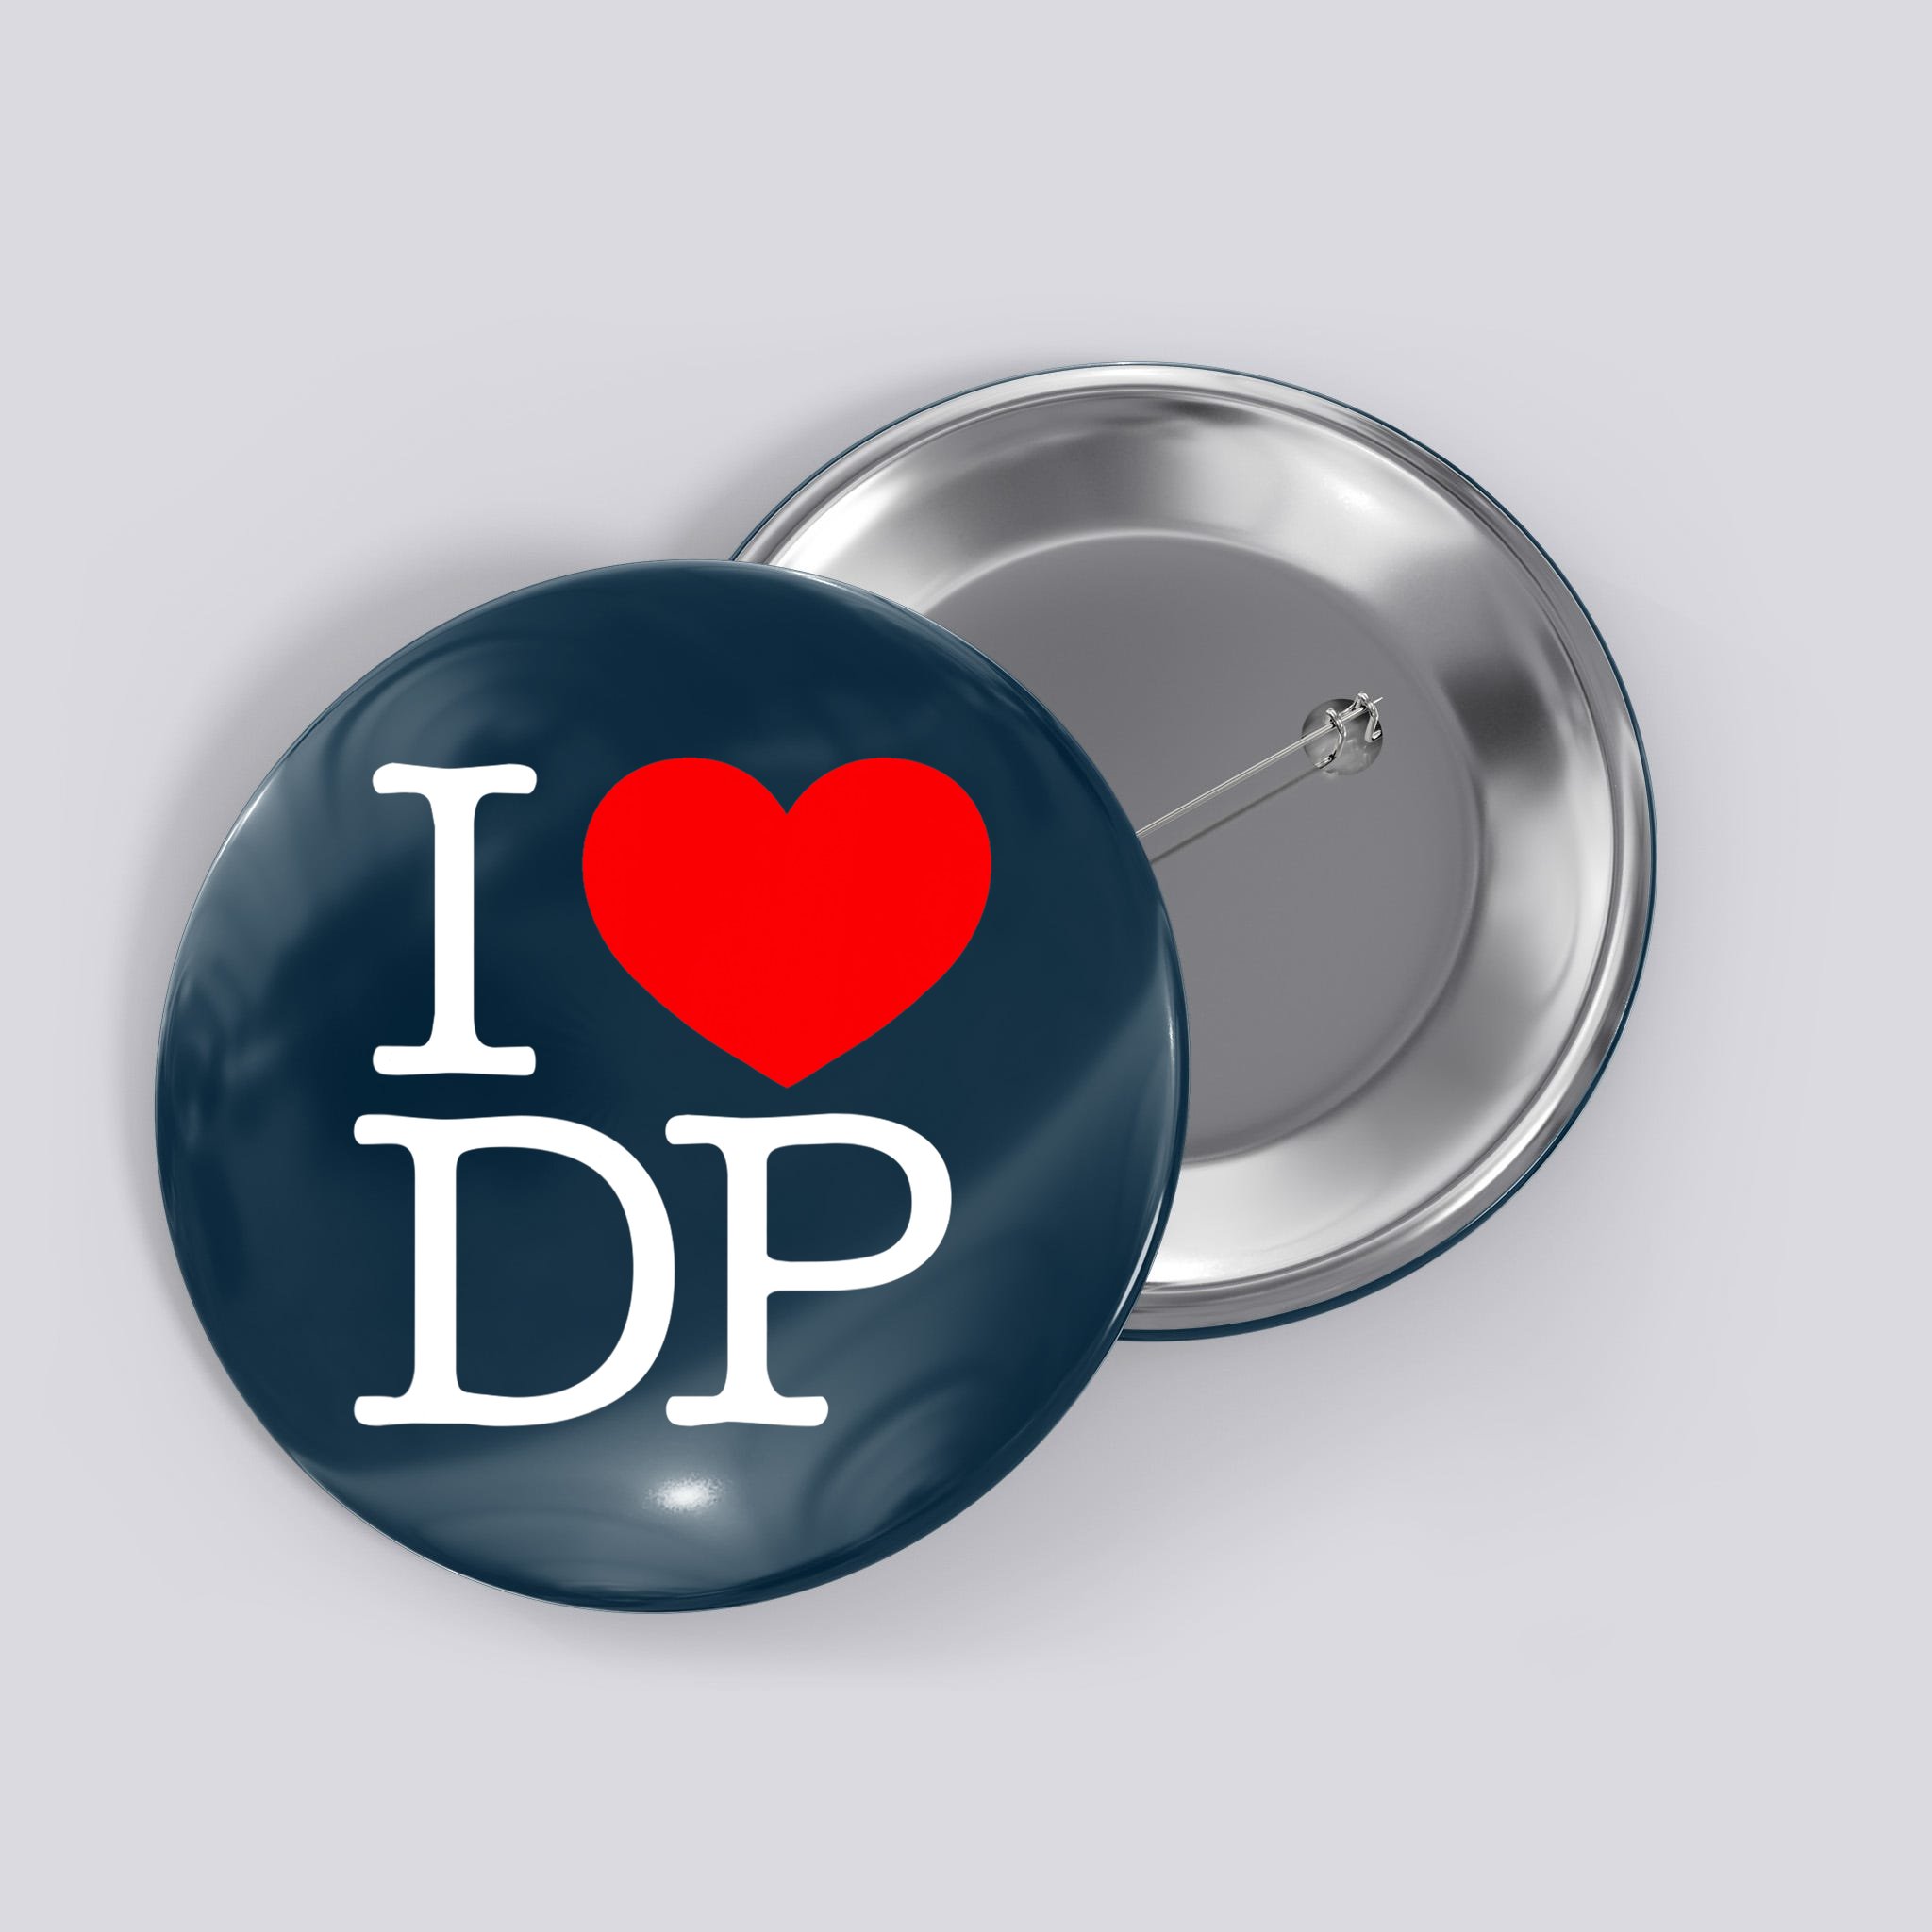 Heart DP - I Love DP